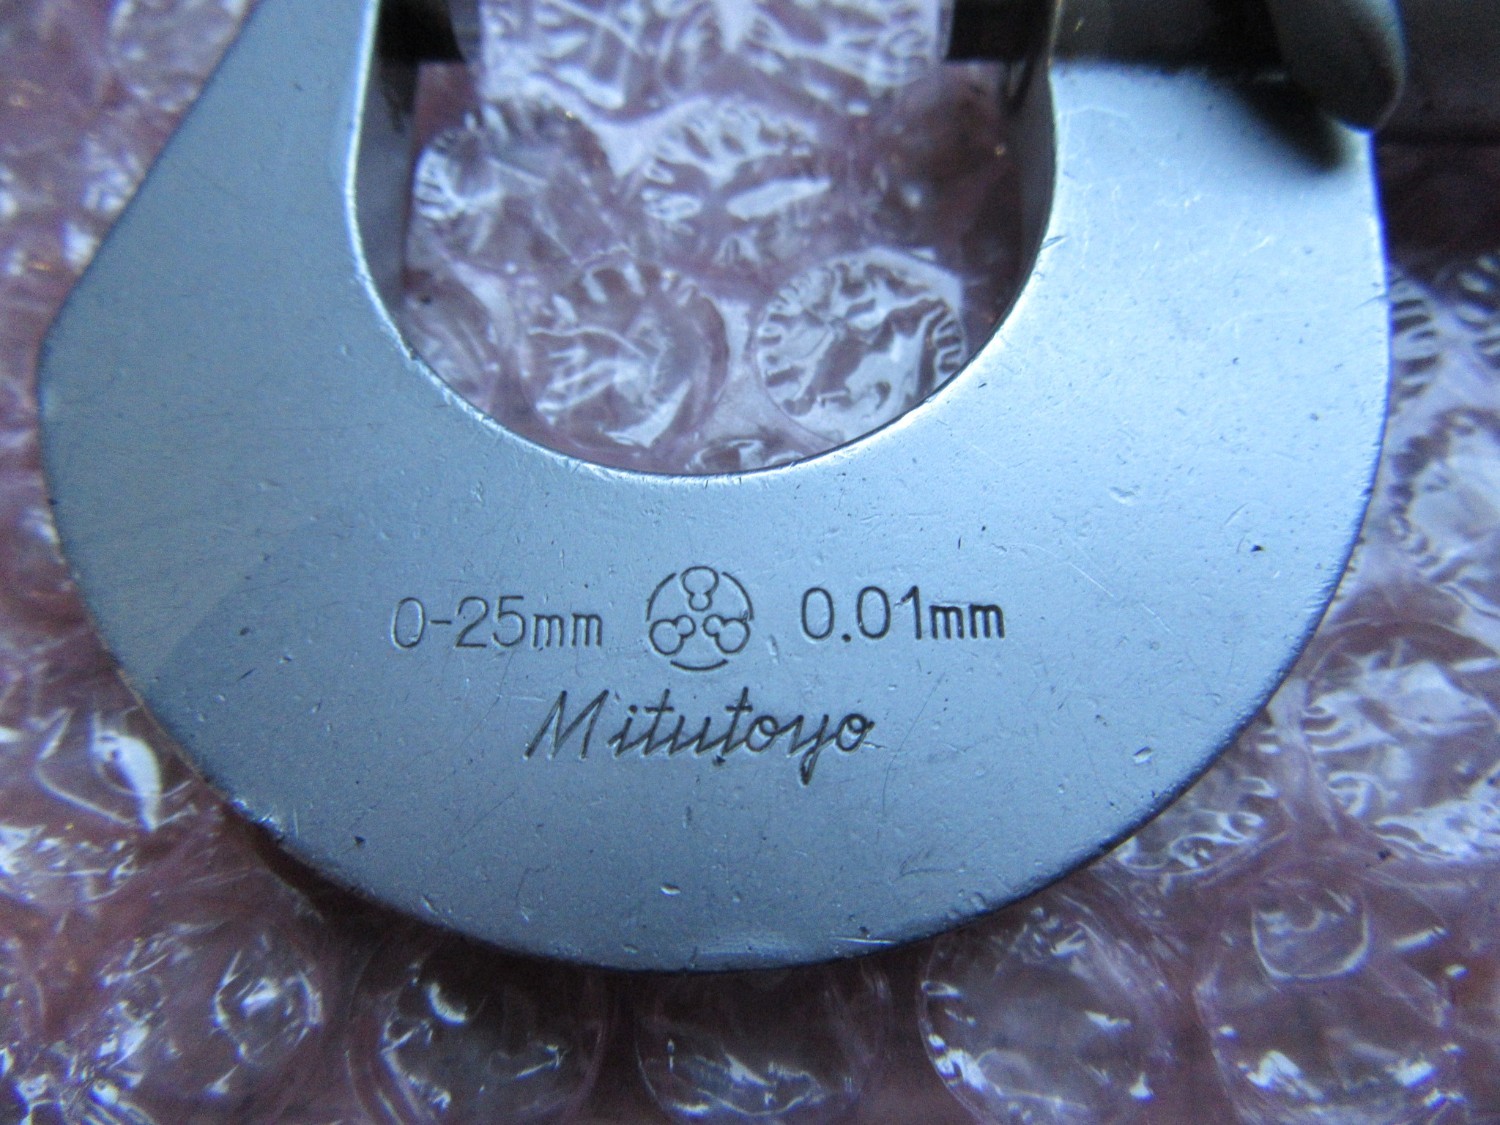 中古Outside micrometer 【外側マイクロメーター】0-25mm(0.01mm)  Mitutoyo